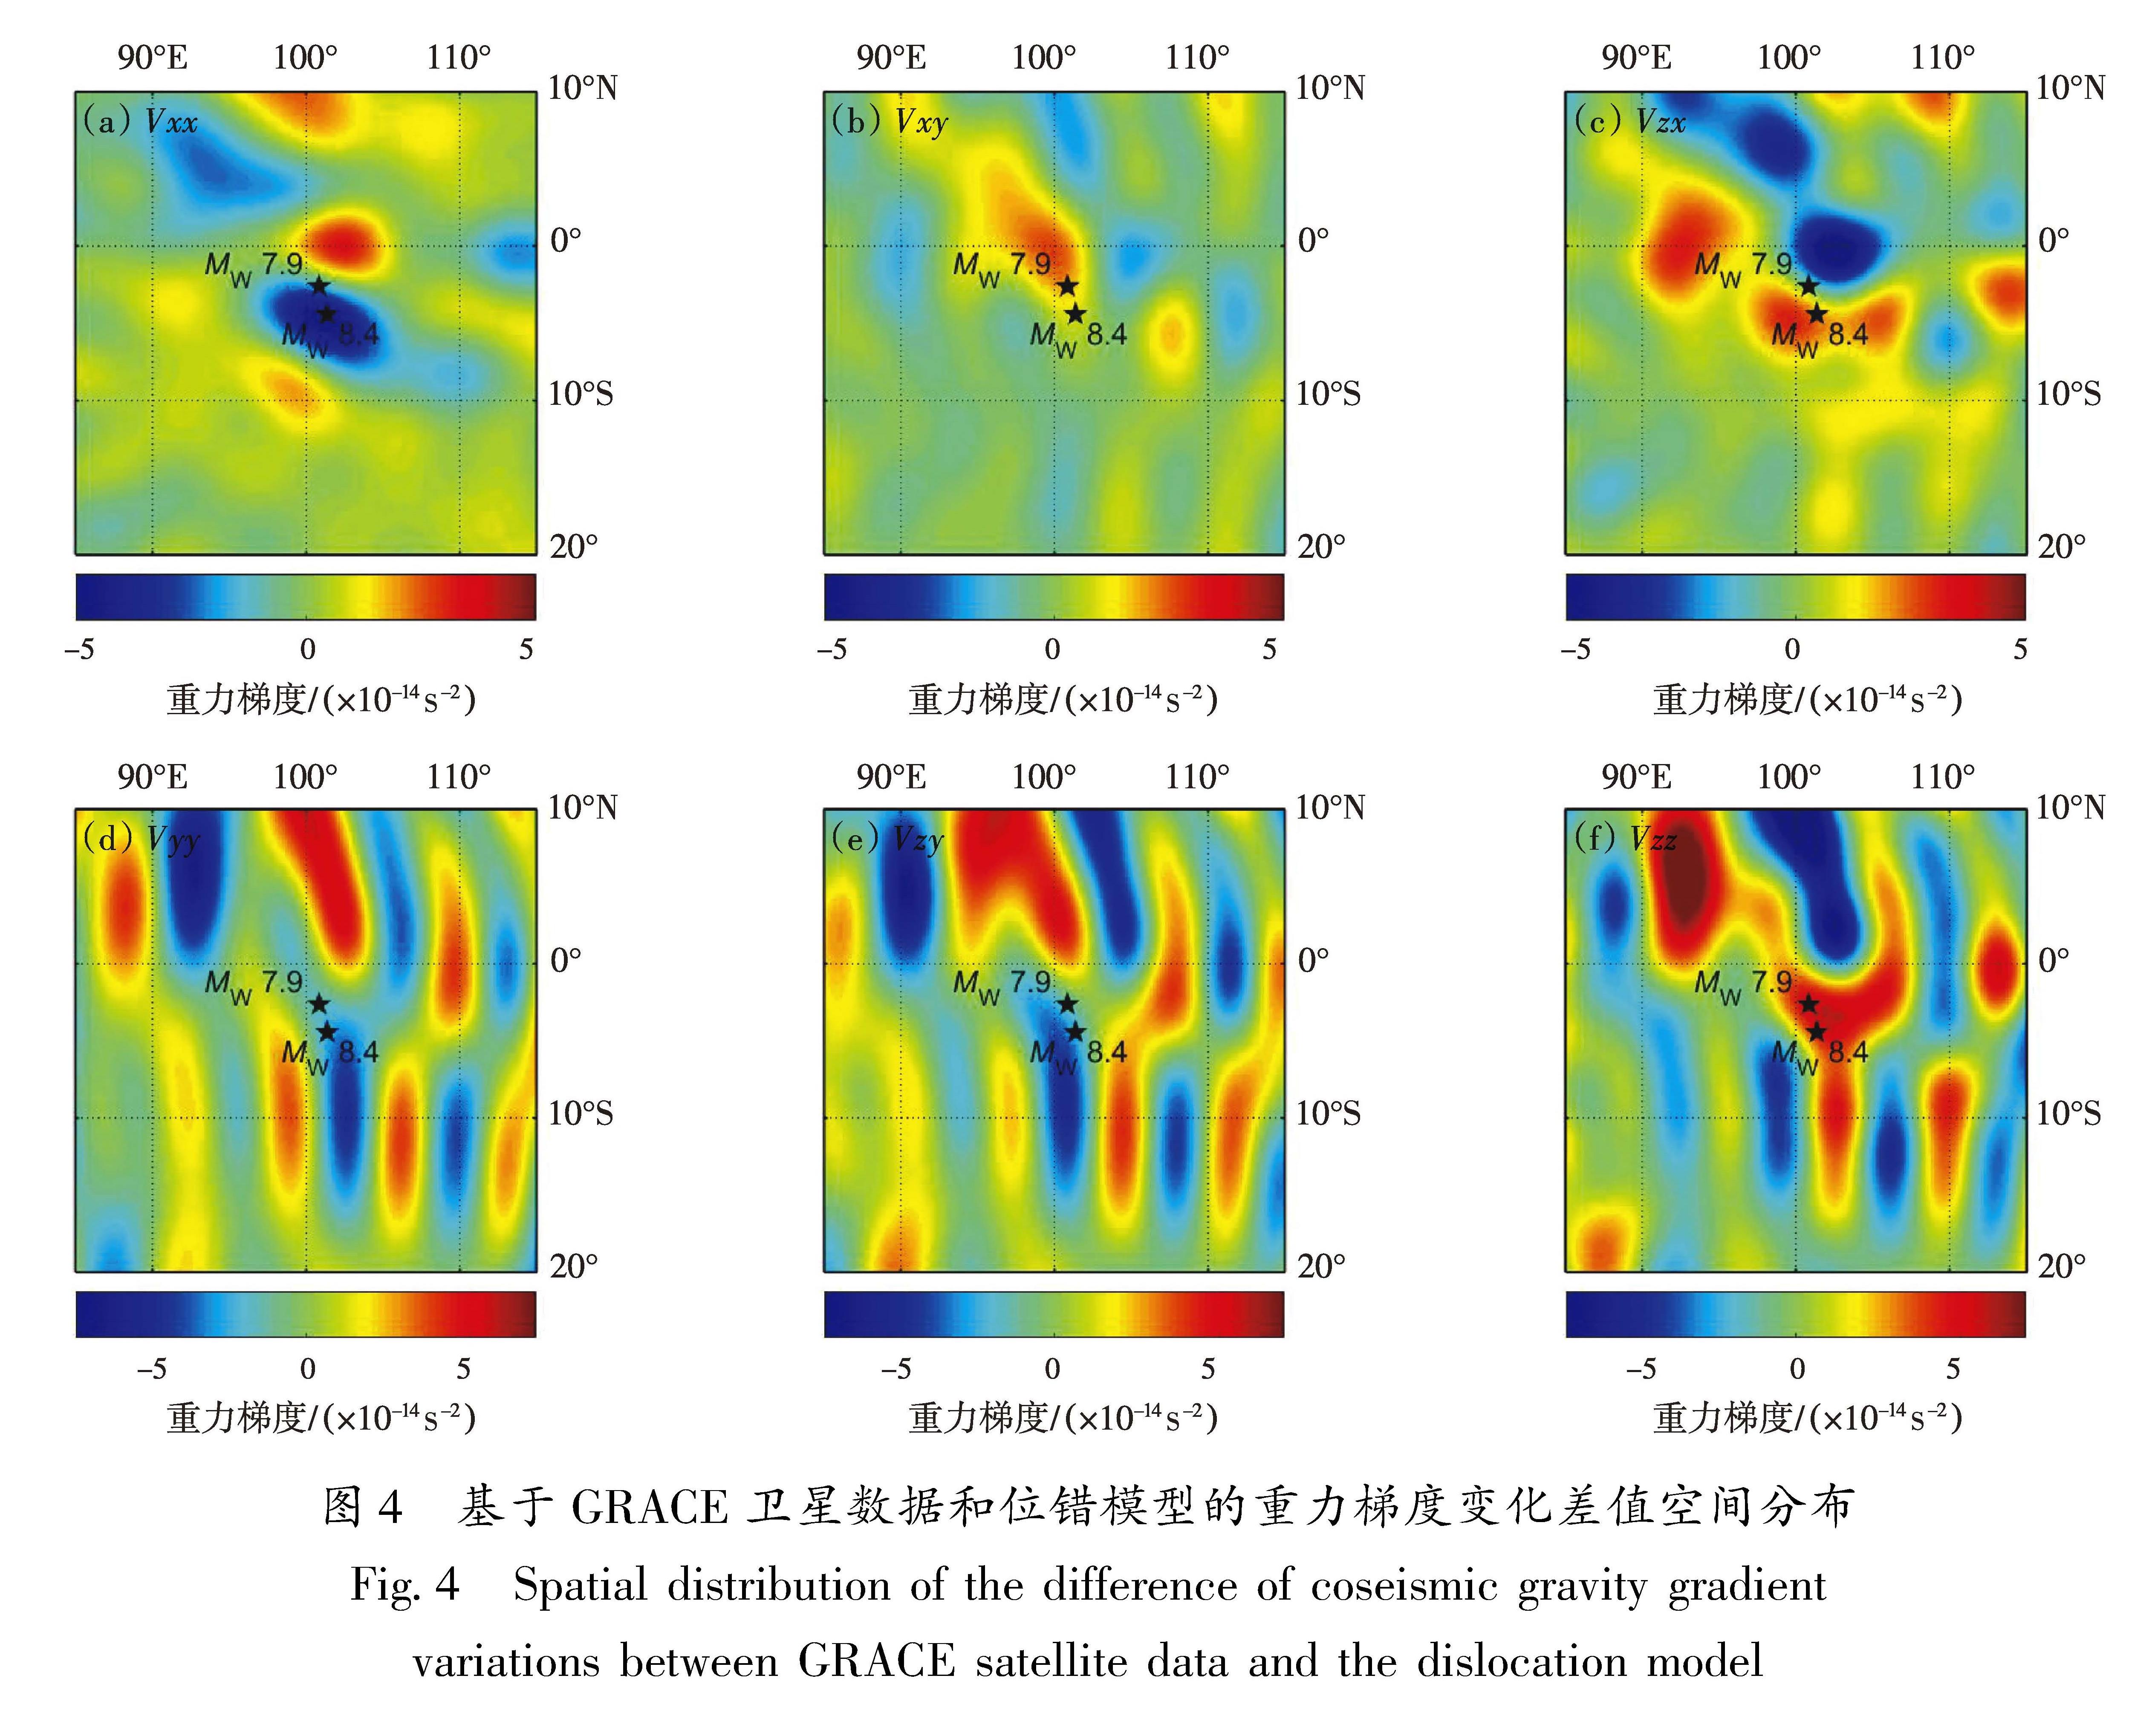 图4 基于GRACE卫星数据和位错模型的重力梯度变化差值空间分布<br/>Fig.4 Spatial distribution of the difference of coseismic gravity gradient variations between GRACE satellite data and the dislocation model